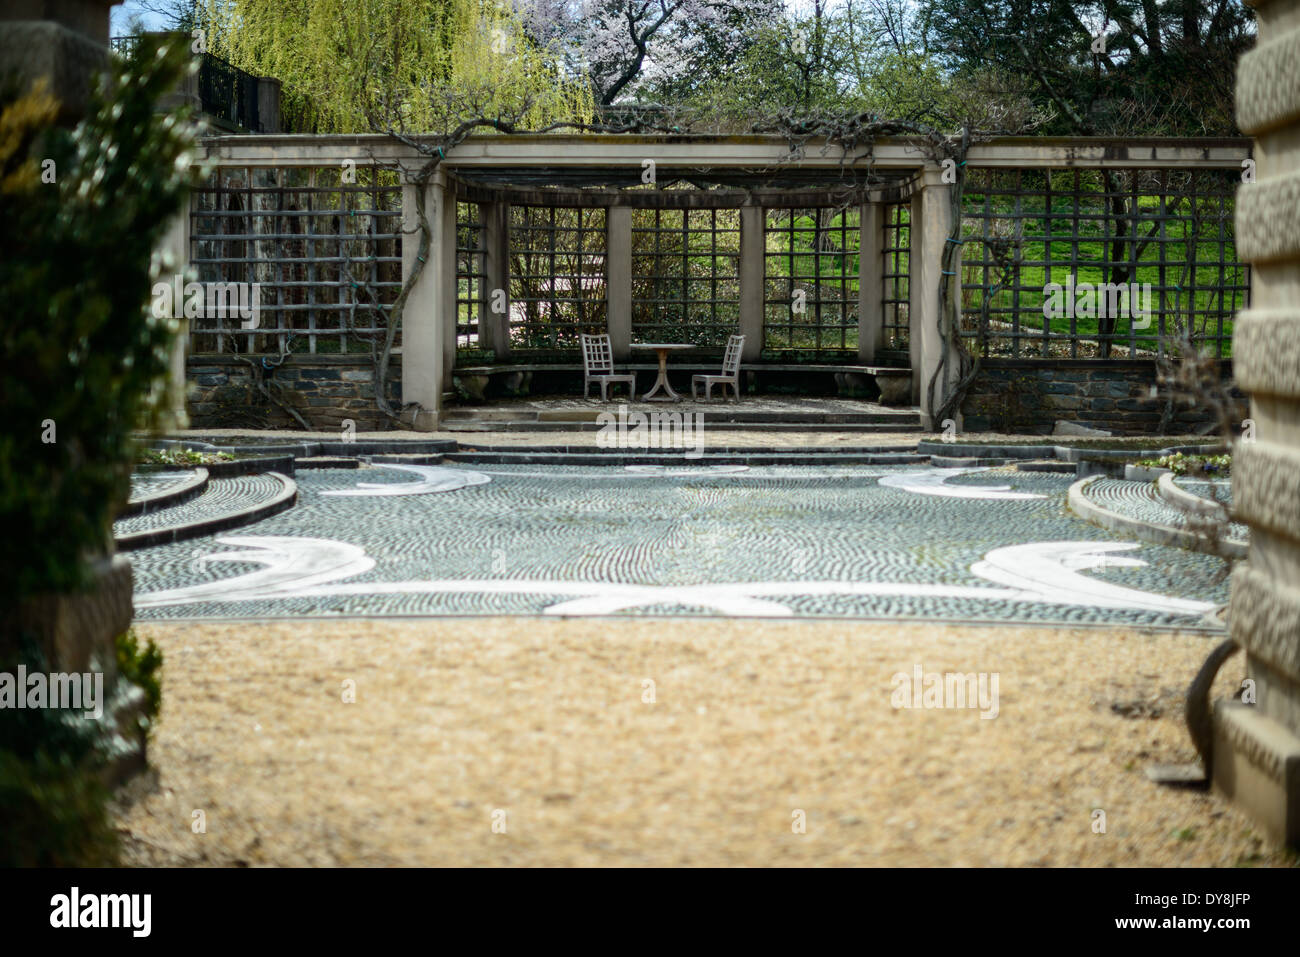 WASHINGTON DC, Stati Uniti d'America - i giardini di Dumbarton Oaks, una residenza storica nel cuore di Washington DC e del quartiere di Georgetown. Fu la residenza e giardini di Robert Woods Bliss (1875-1962) e sua moglie Mildred Barnes Bliss (1879-1969). Foto Stock